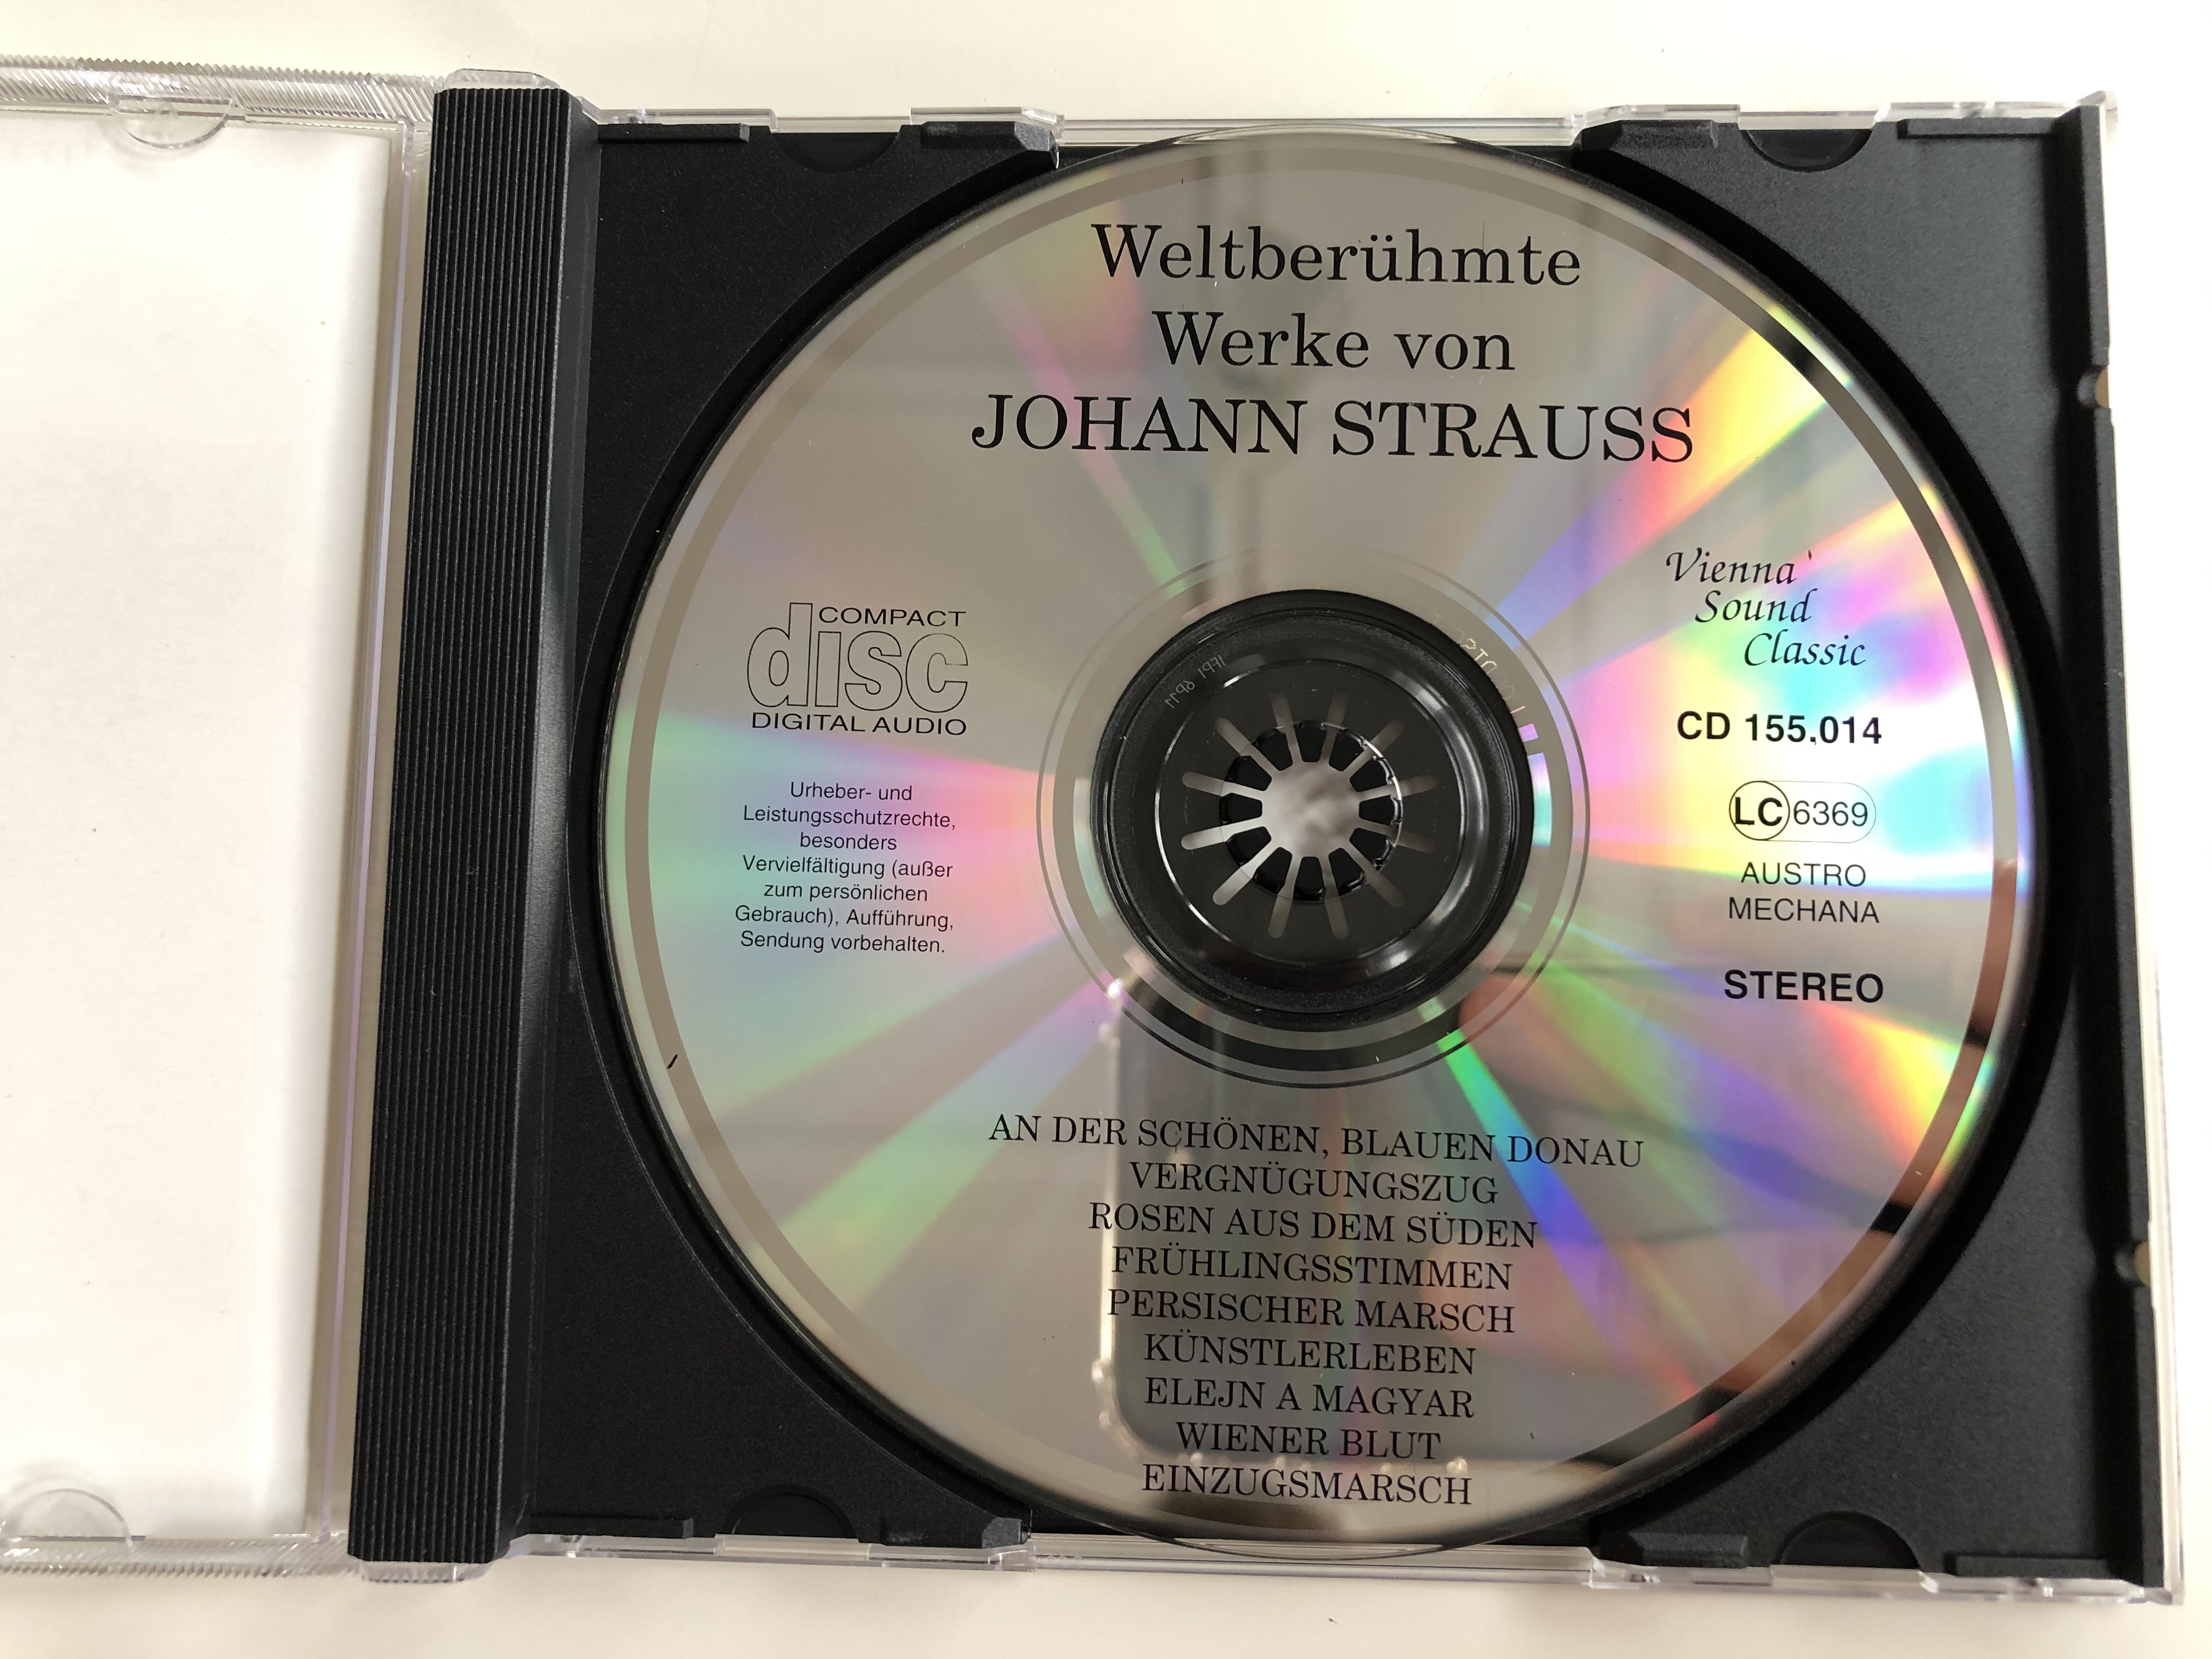 vienna-sound-classic-beruhmte-meisterwerke-strauss-ein-abend-bei-johann-strauss-1894-j.s.-sohn-weltberuhmte-werke-an-der-schonen-blauen-donau-u.a.-digital-recording-mastering-digi.jpg